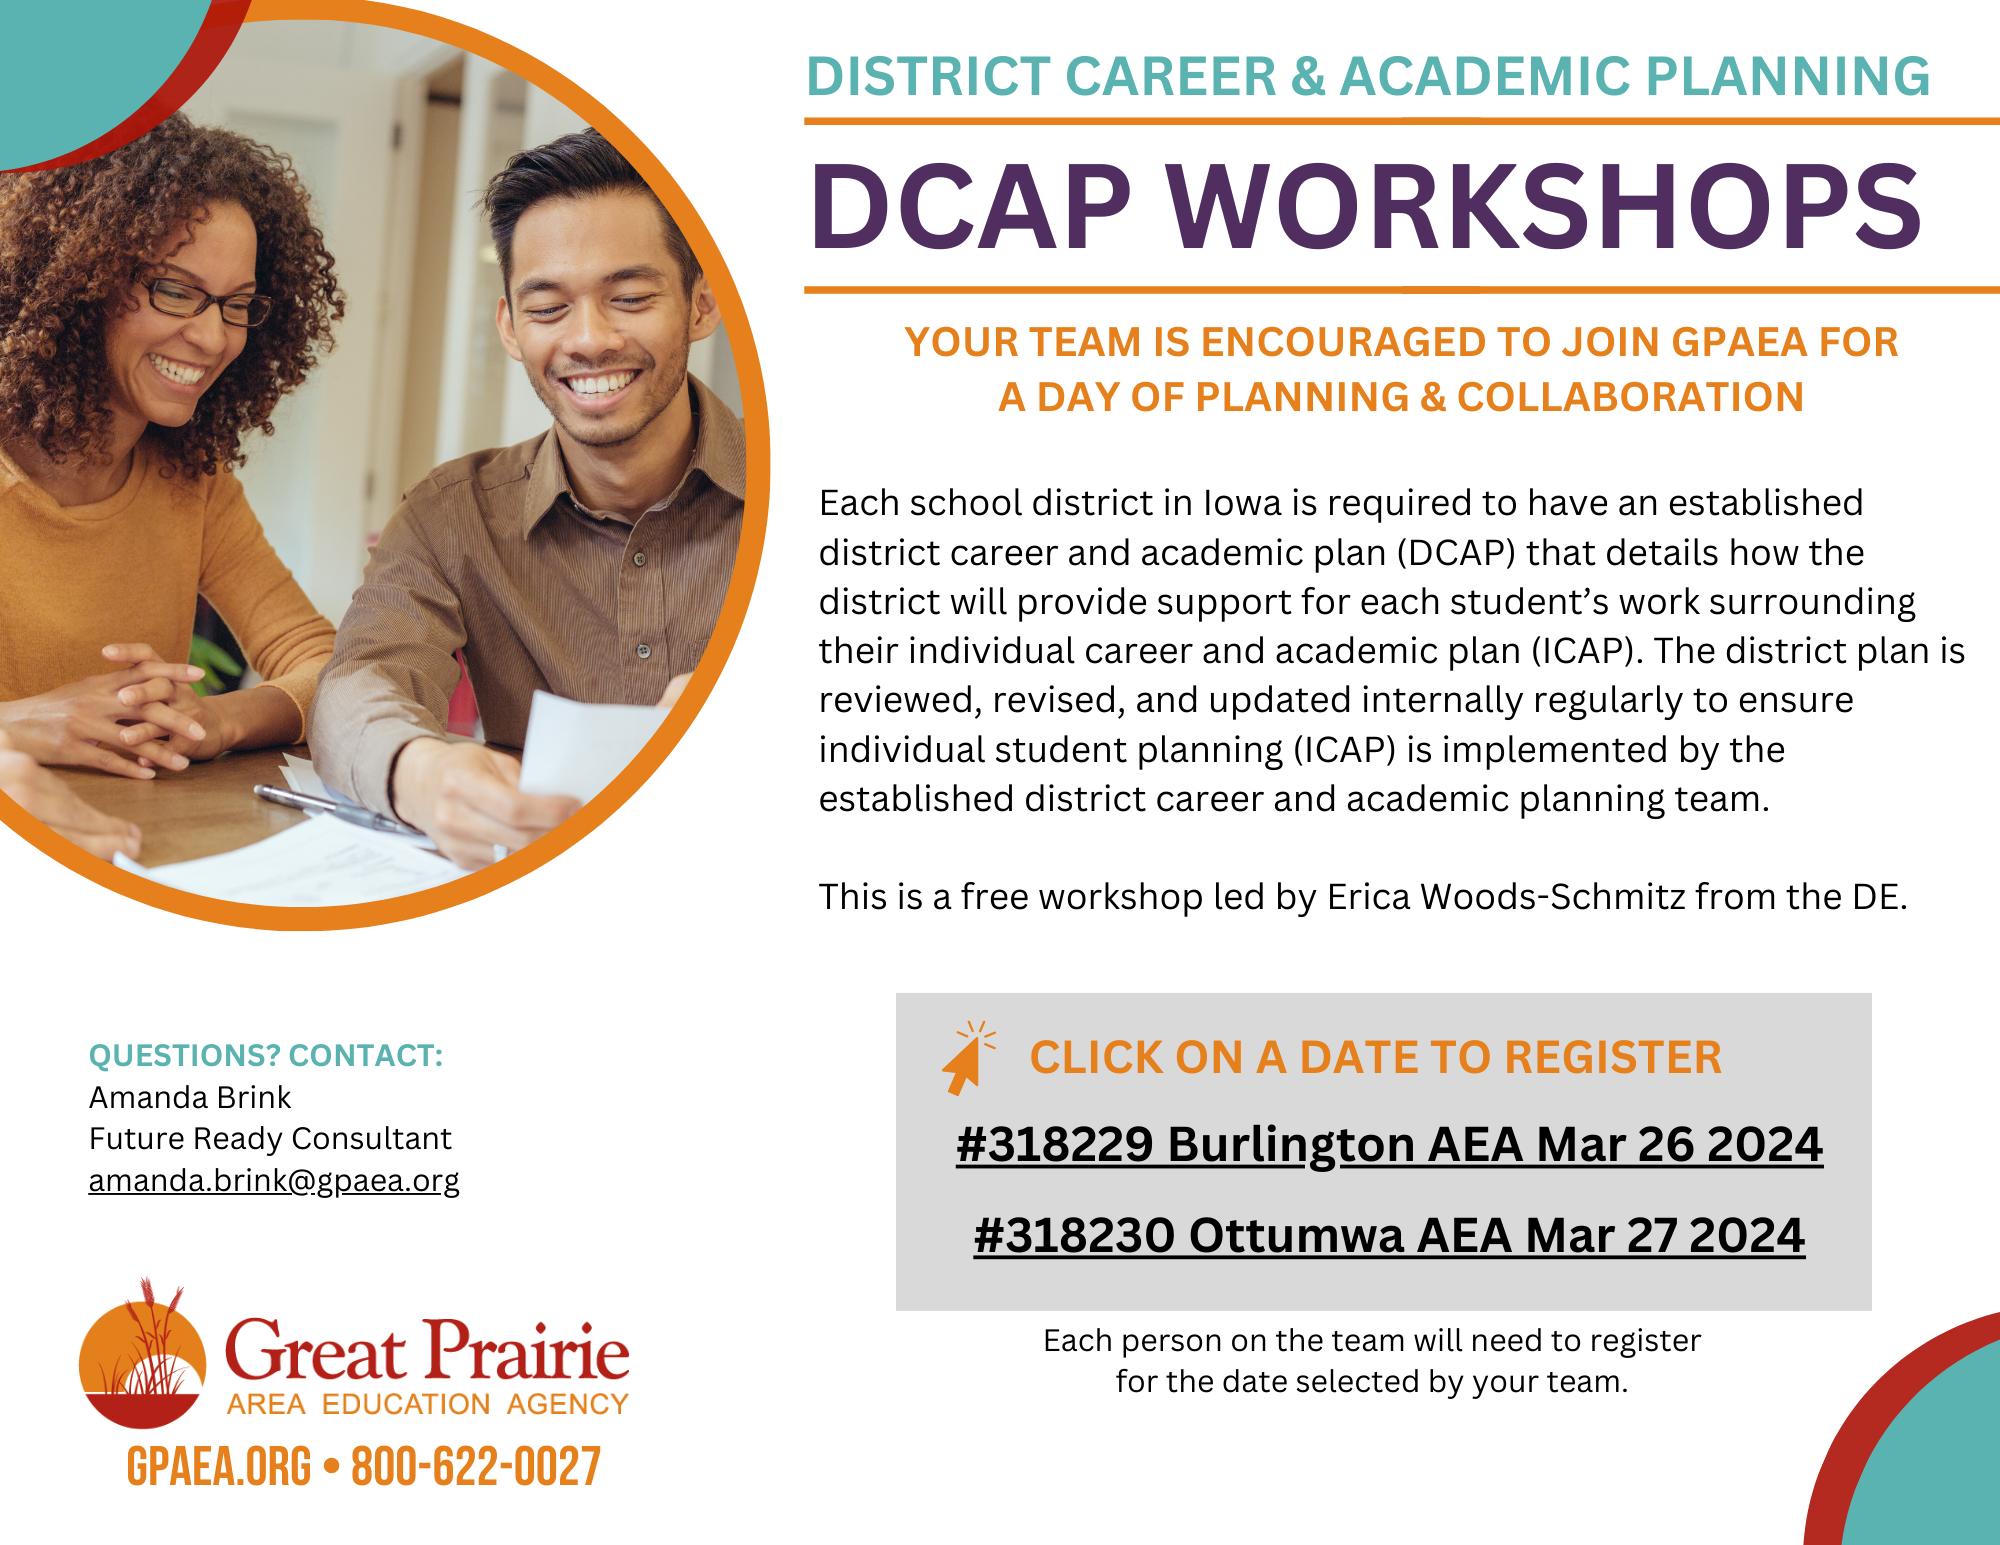 DCAP Workshops March 26 & 27